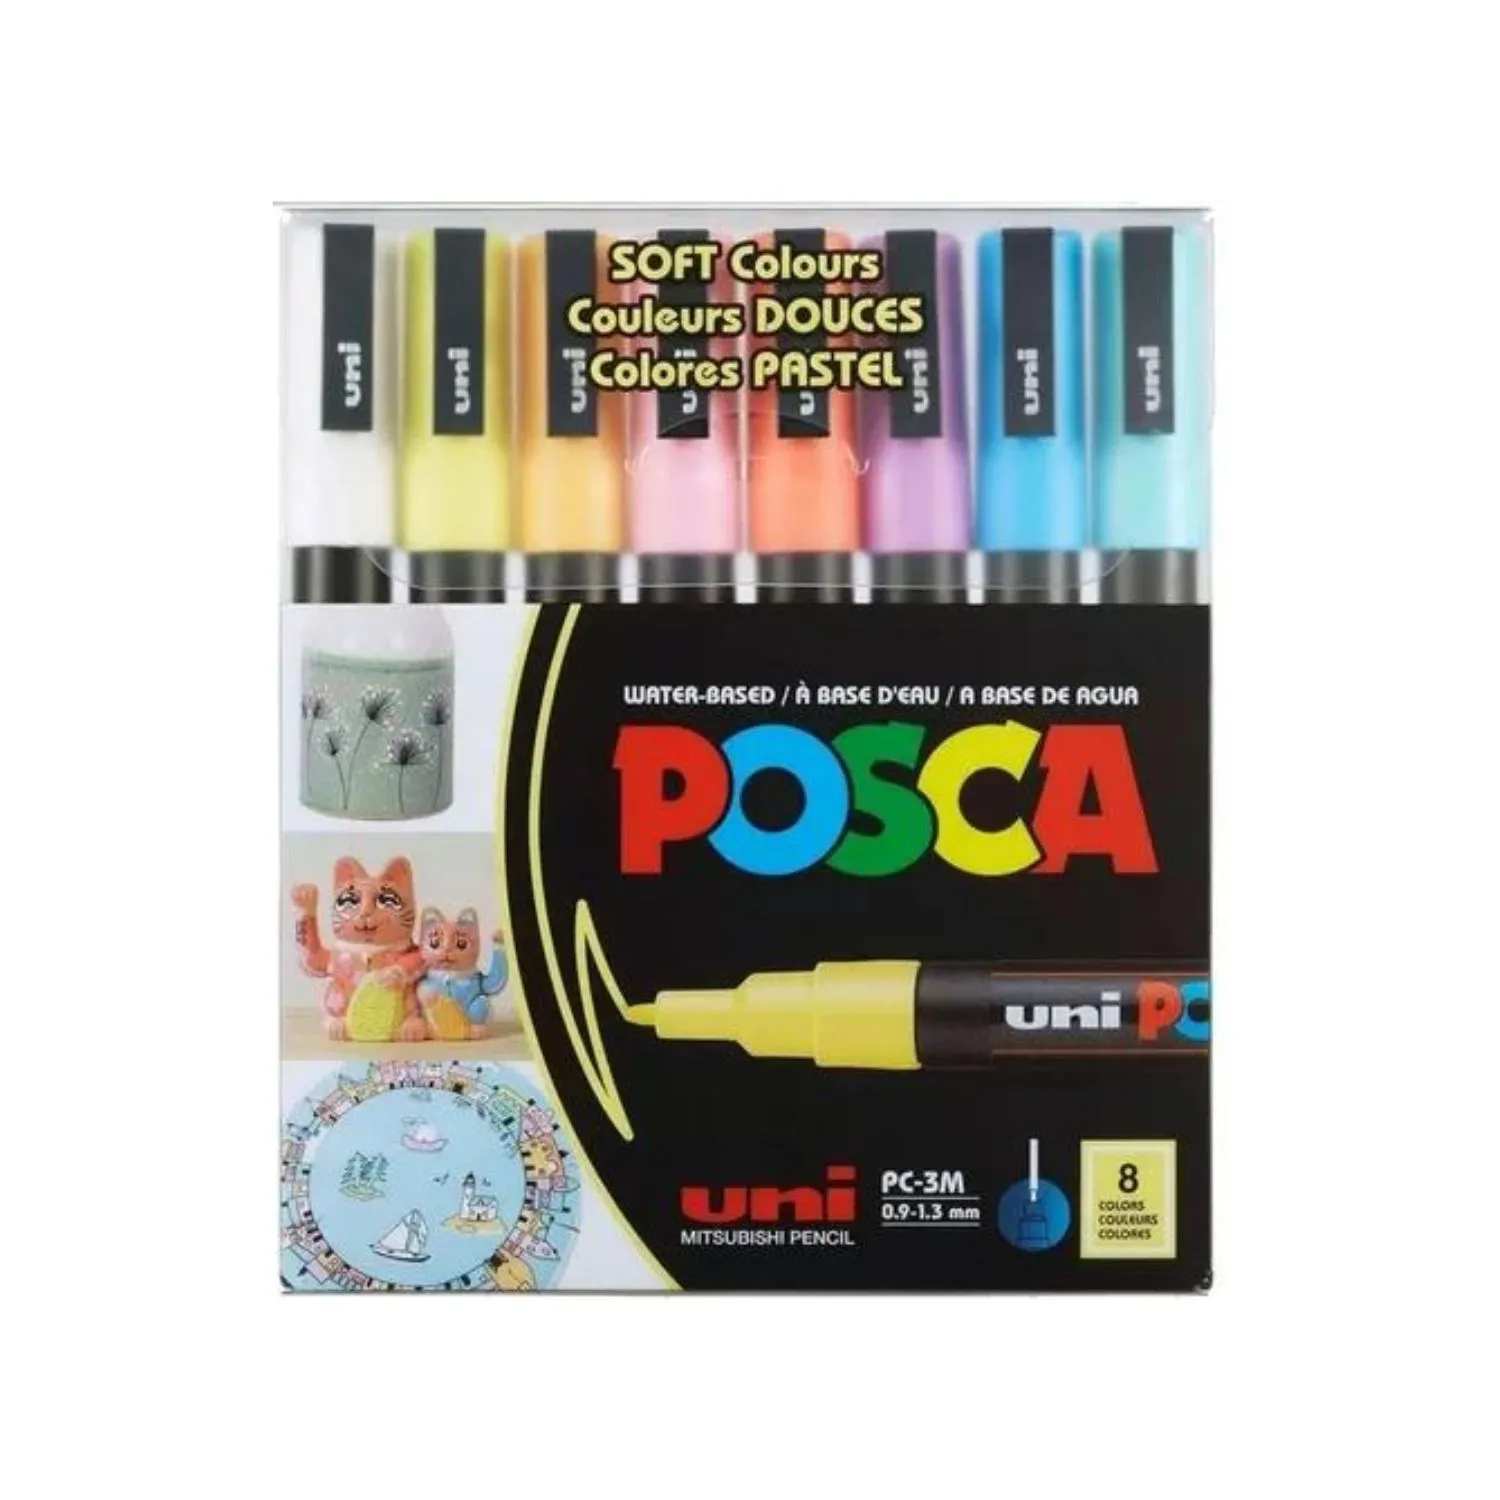 Marcador Uni Posca Pastel Pc3m Pack 8 Colores Soft Colors